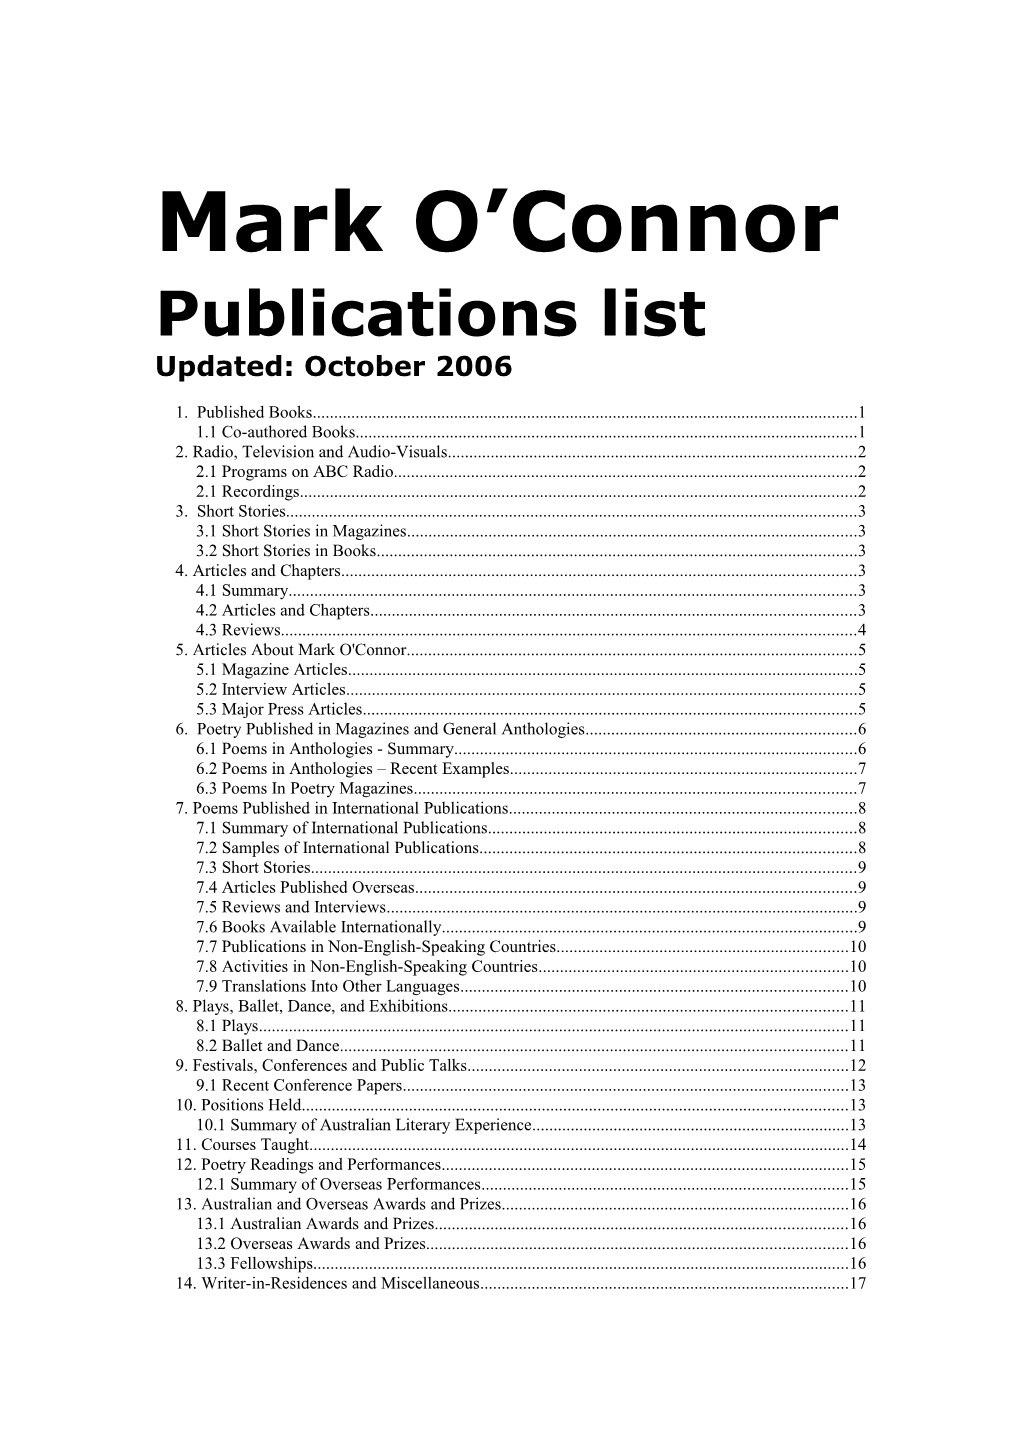 Publications List